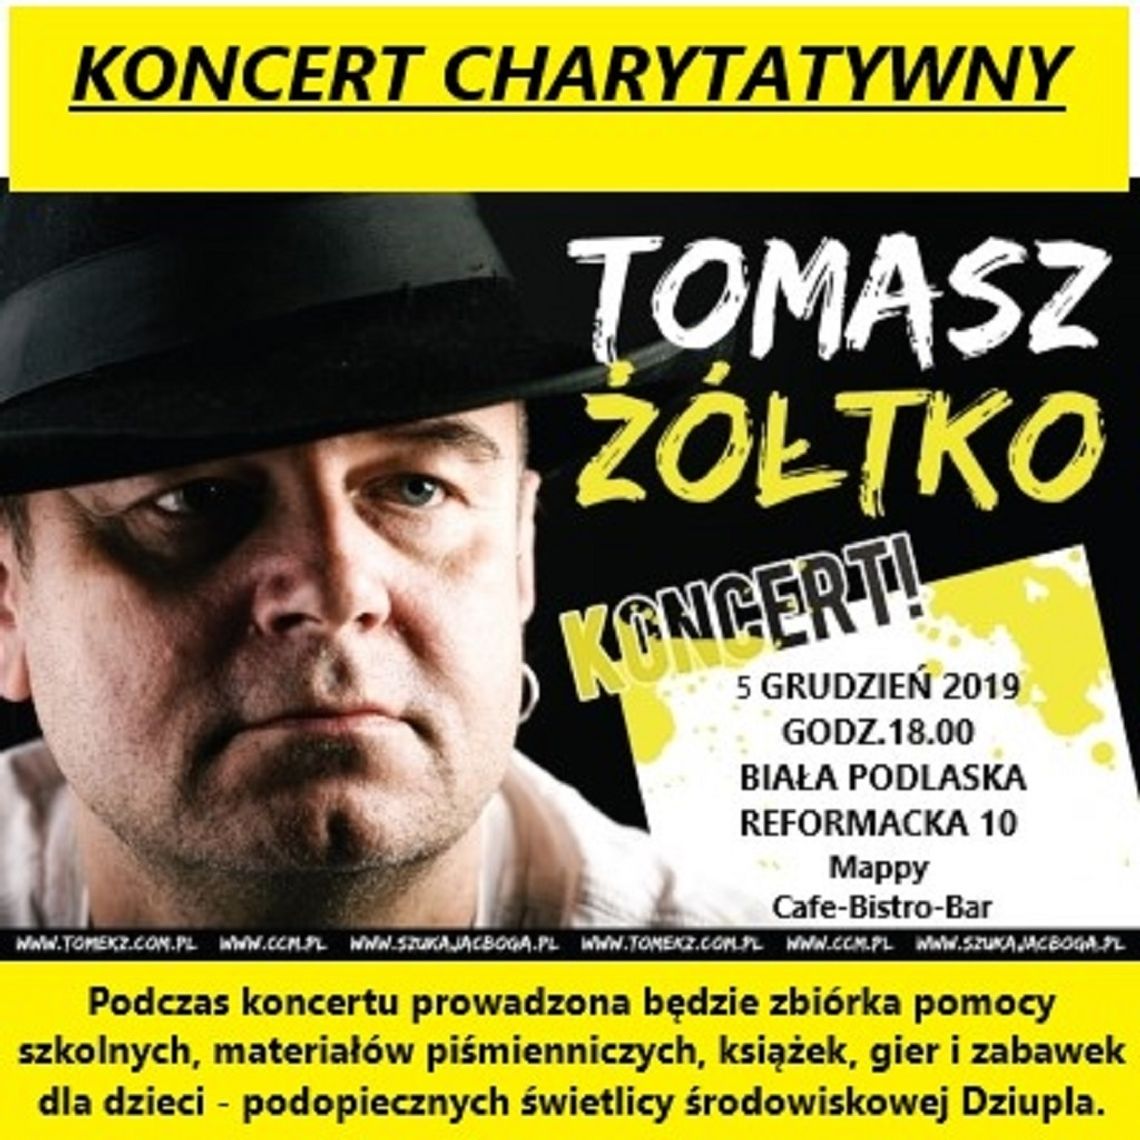 Koncert charytatywny Tomasza Żółtko w Białej Podlaskiej